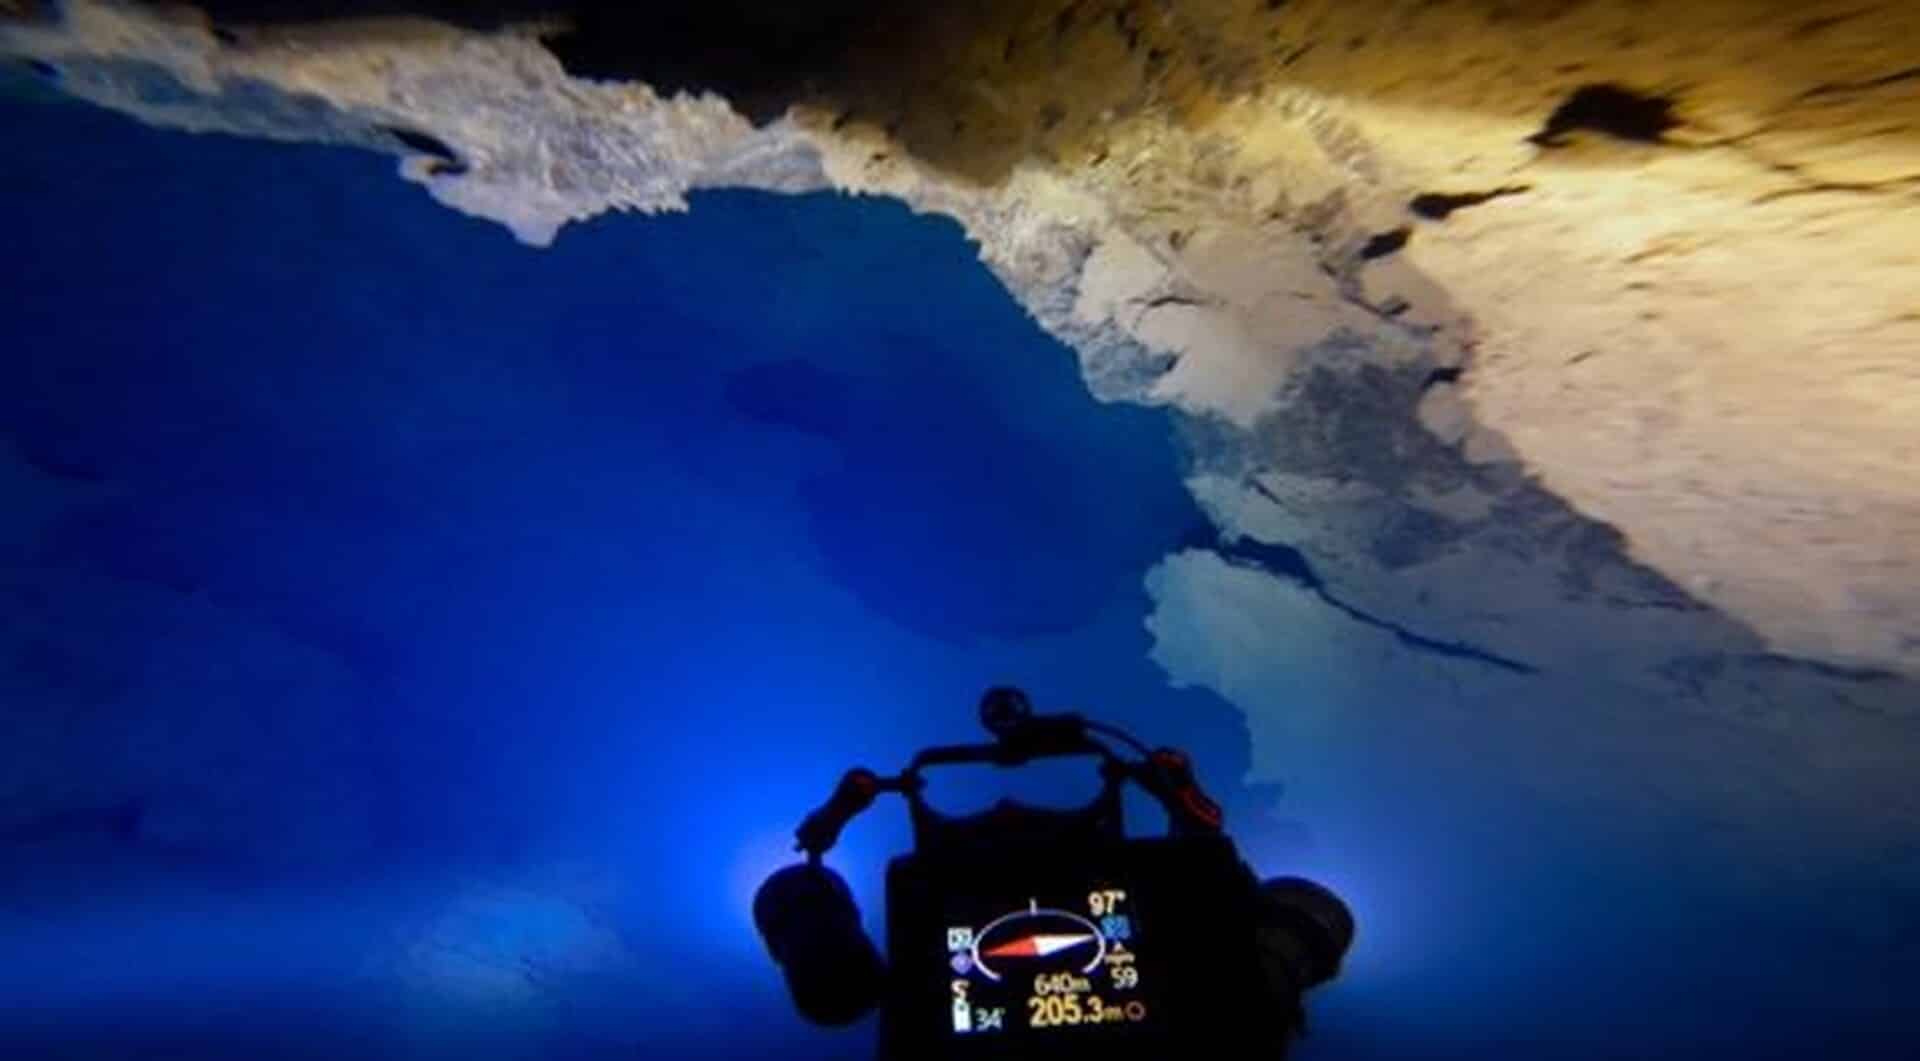 Σίντζι-Πελοποννήσου:-Σπηλαιοδύτες-καταδύθηκαν-σε-ένα-από-τα-βαθύτερα-σπήλαια-του-κόσμου-(vid)